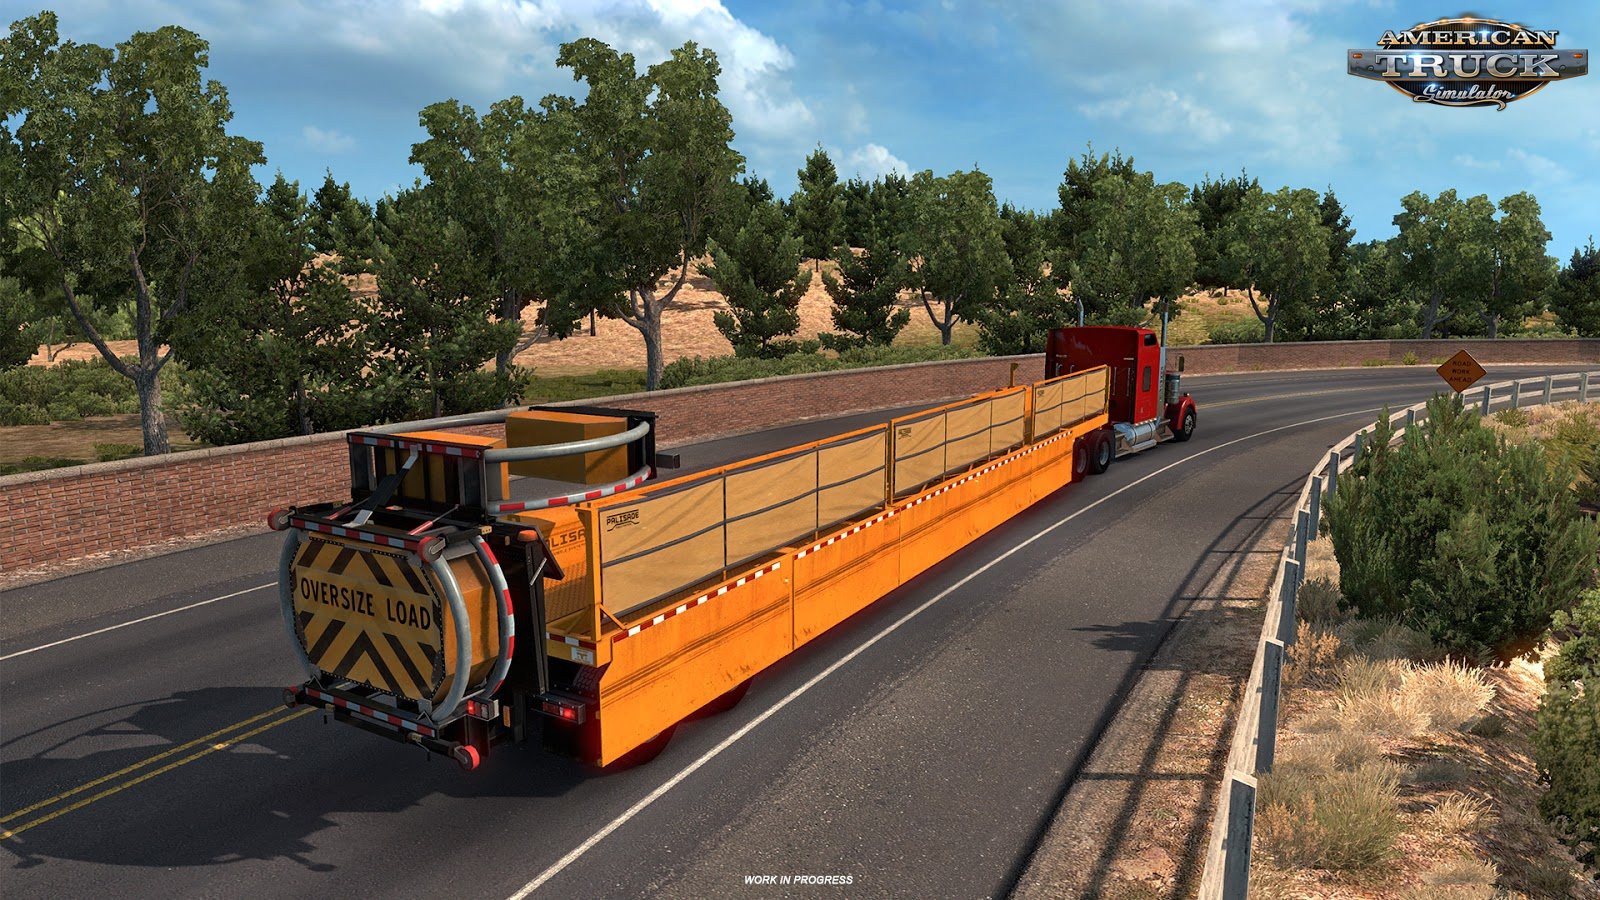 american truck simulator latest update